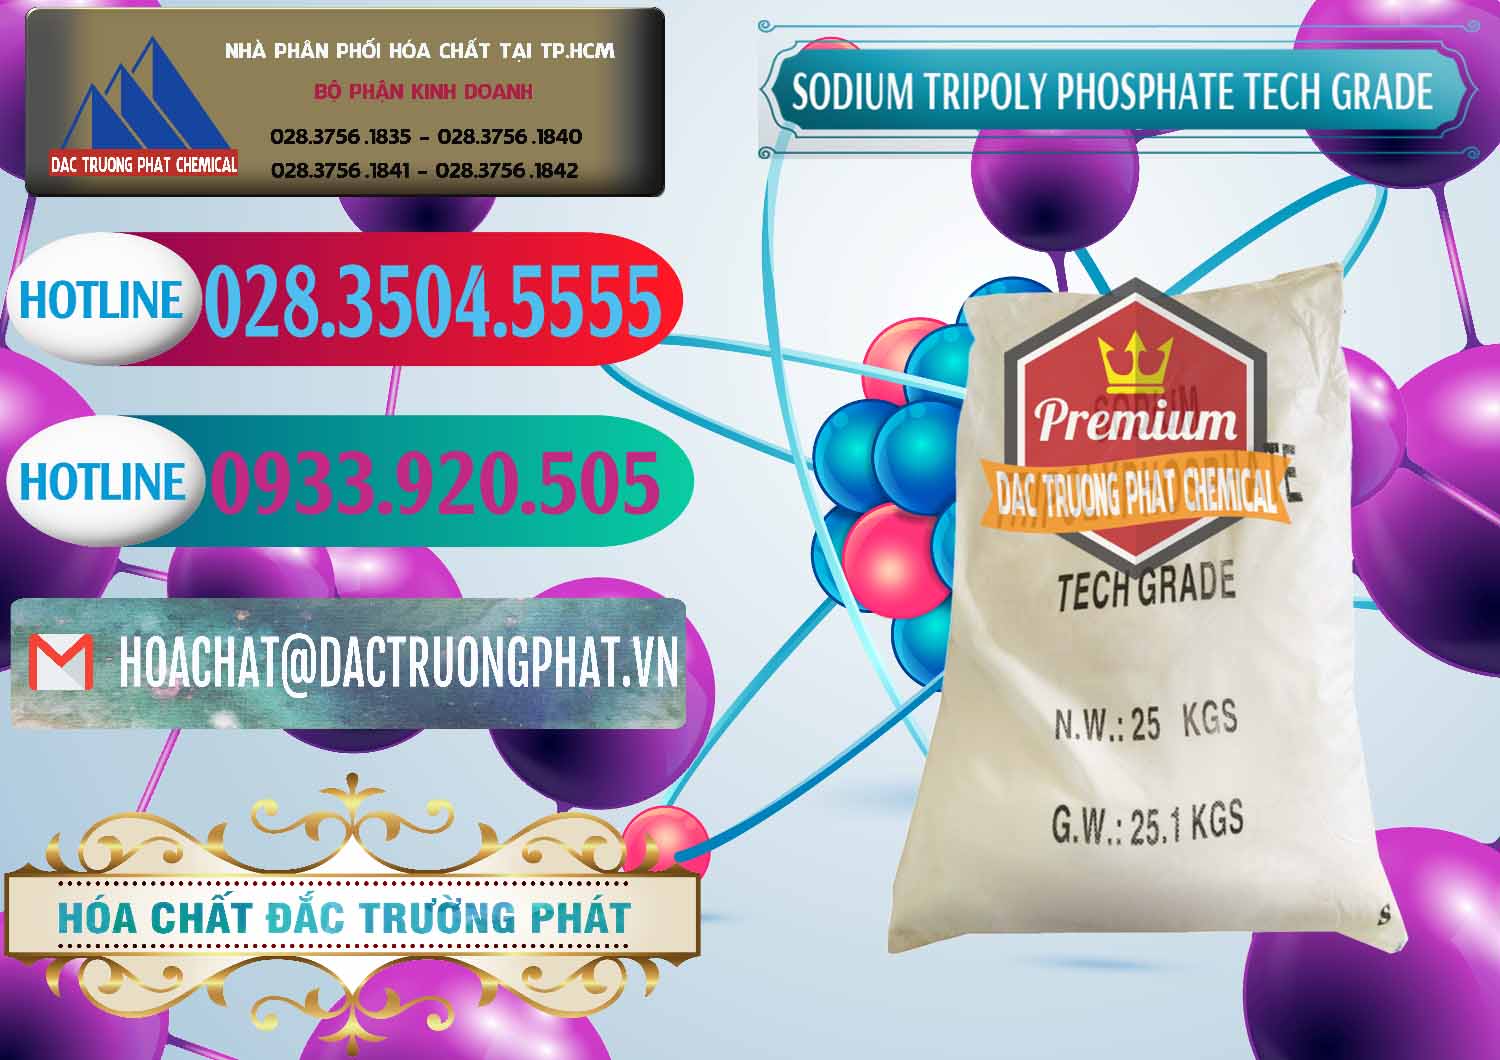 Nơi chuyên kinh doanh ( bán ) Sodium Tripoly Phosphate - STPP Tech Grade Trung Quốc China - 0453 - Chuyên phân phối _ kinh doanh hóa chất tại TP.HCM - truongphat.vn